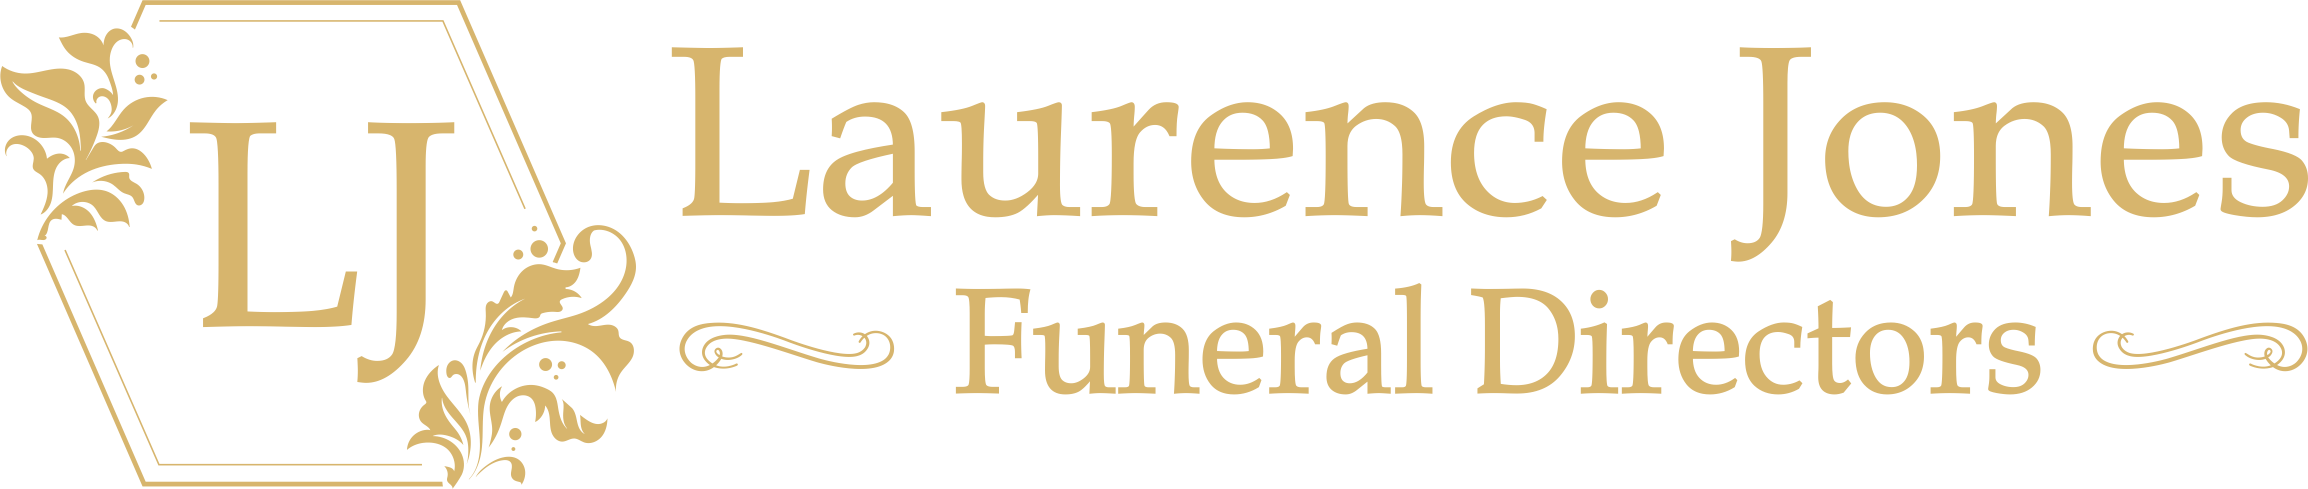 Laurence Jones Funeral Directors